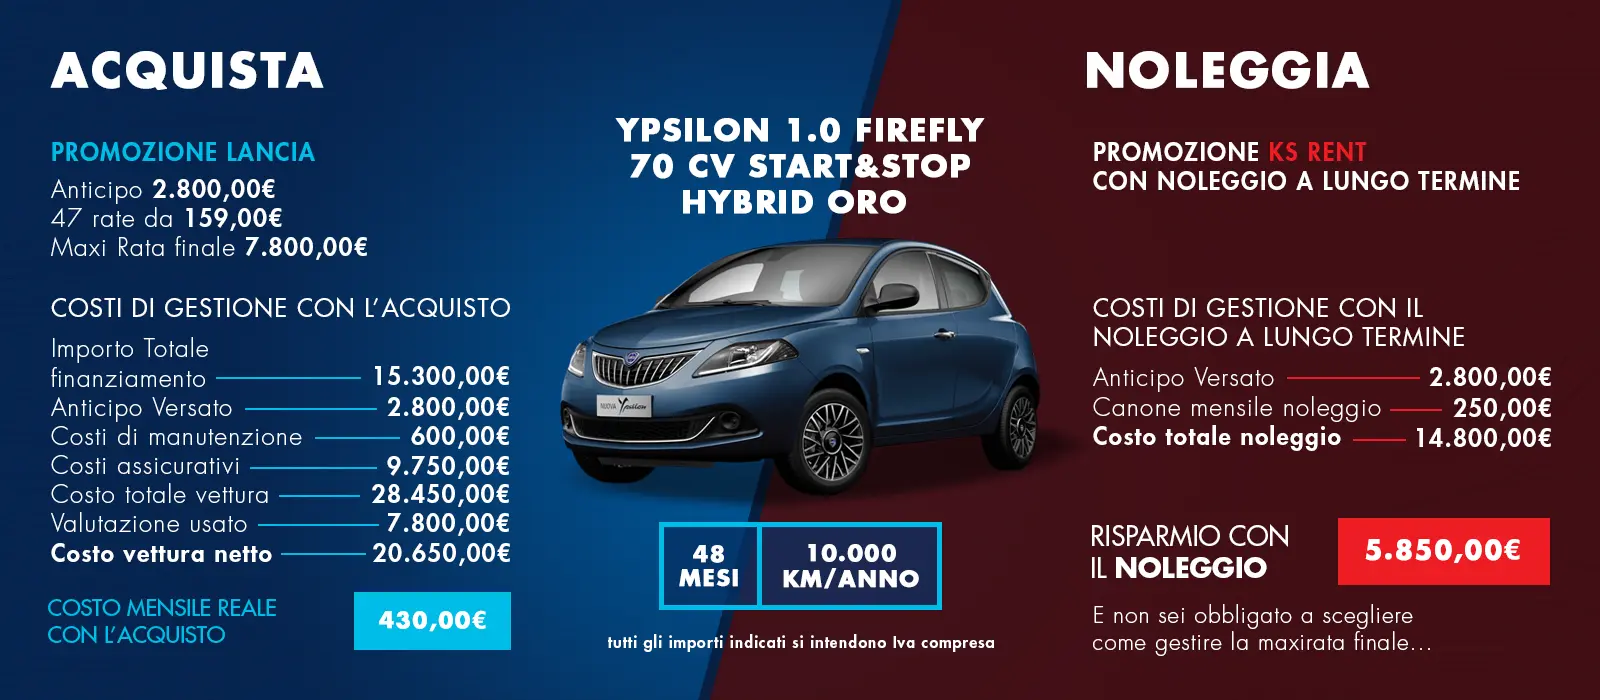 Ypsilon 1.0 Firefly 70 CV Start&Stop Hybrid Oro